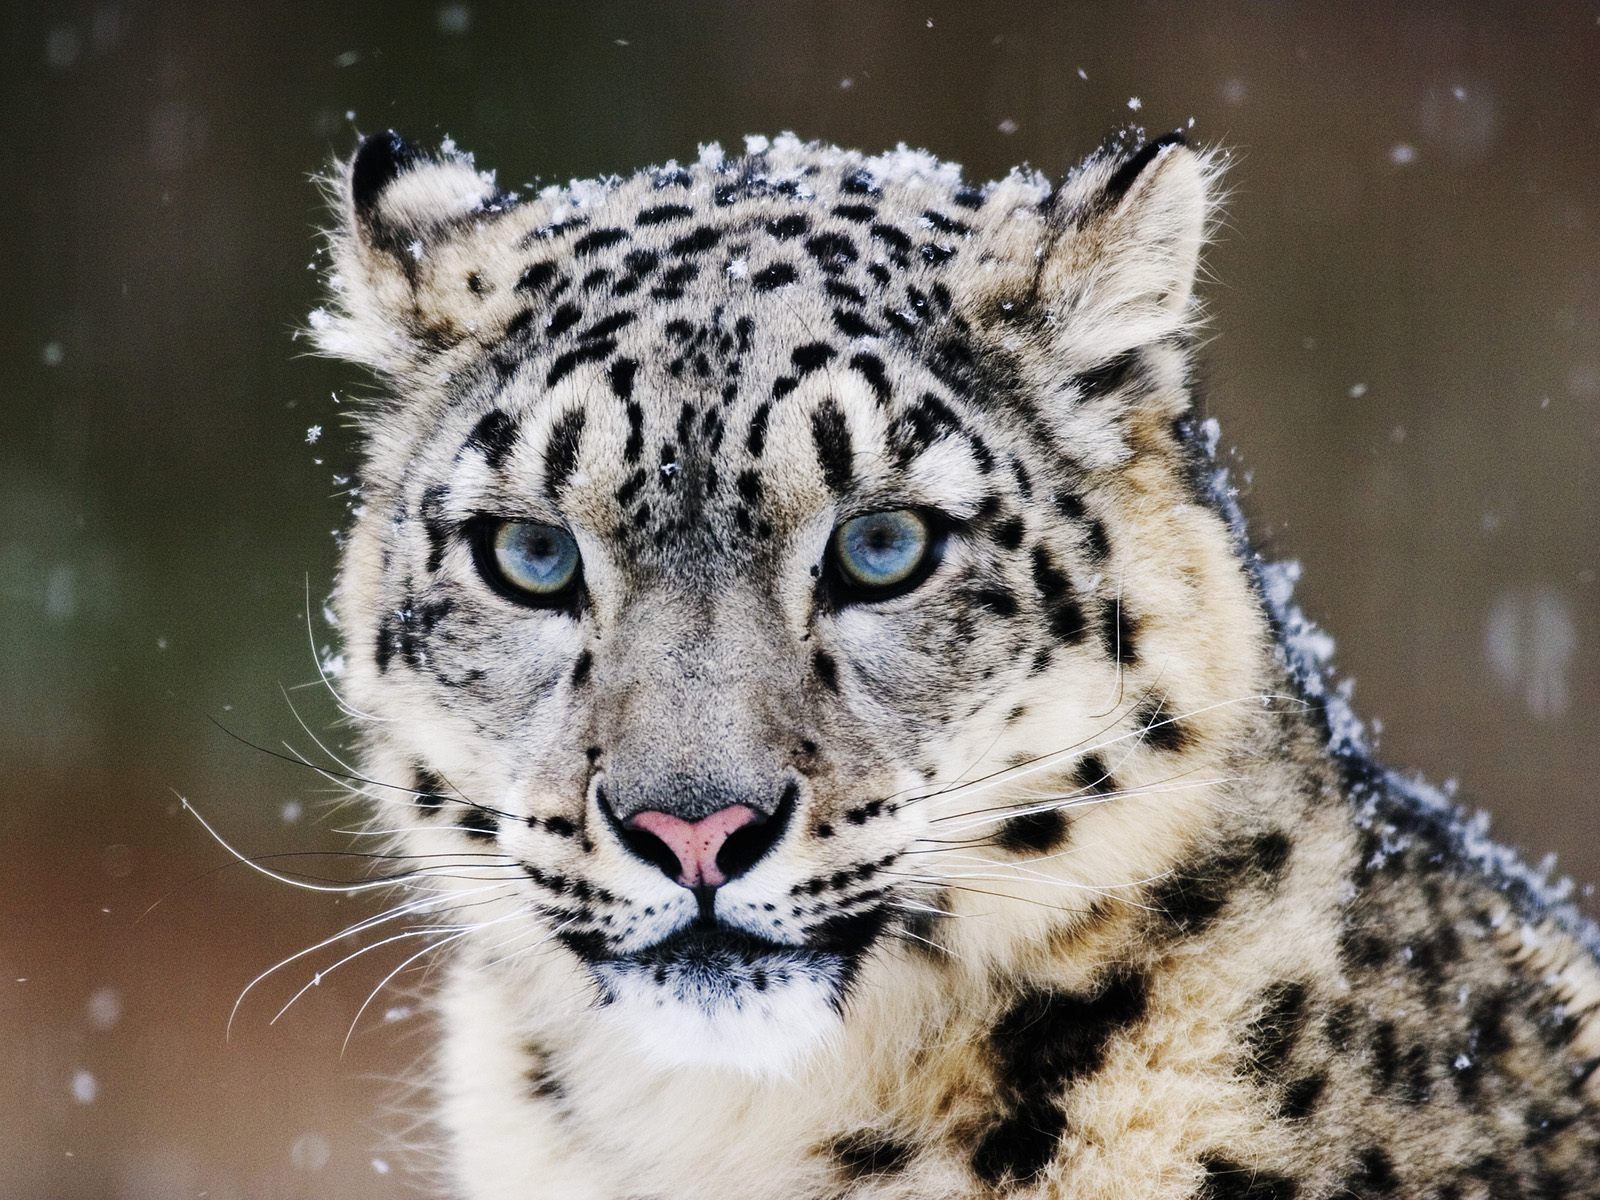 Snow Leopard276618593 - Snow Leopard - Snow, Montana, Leopard